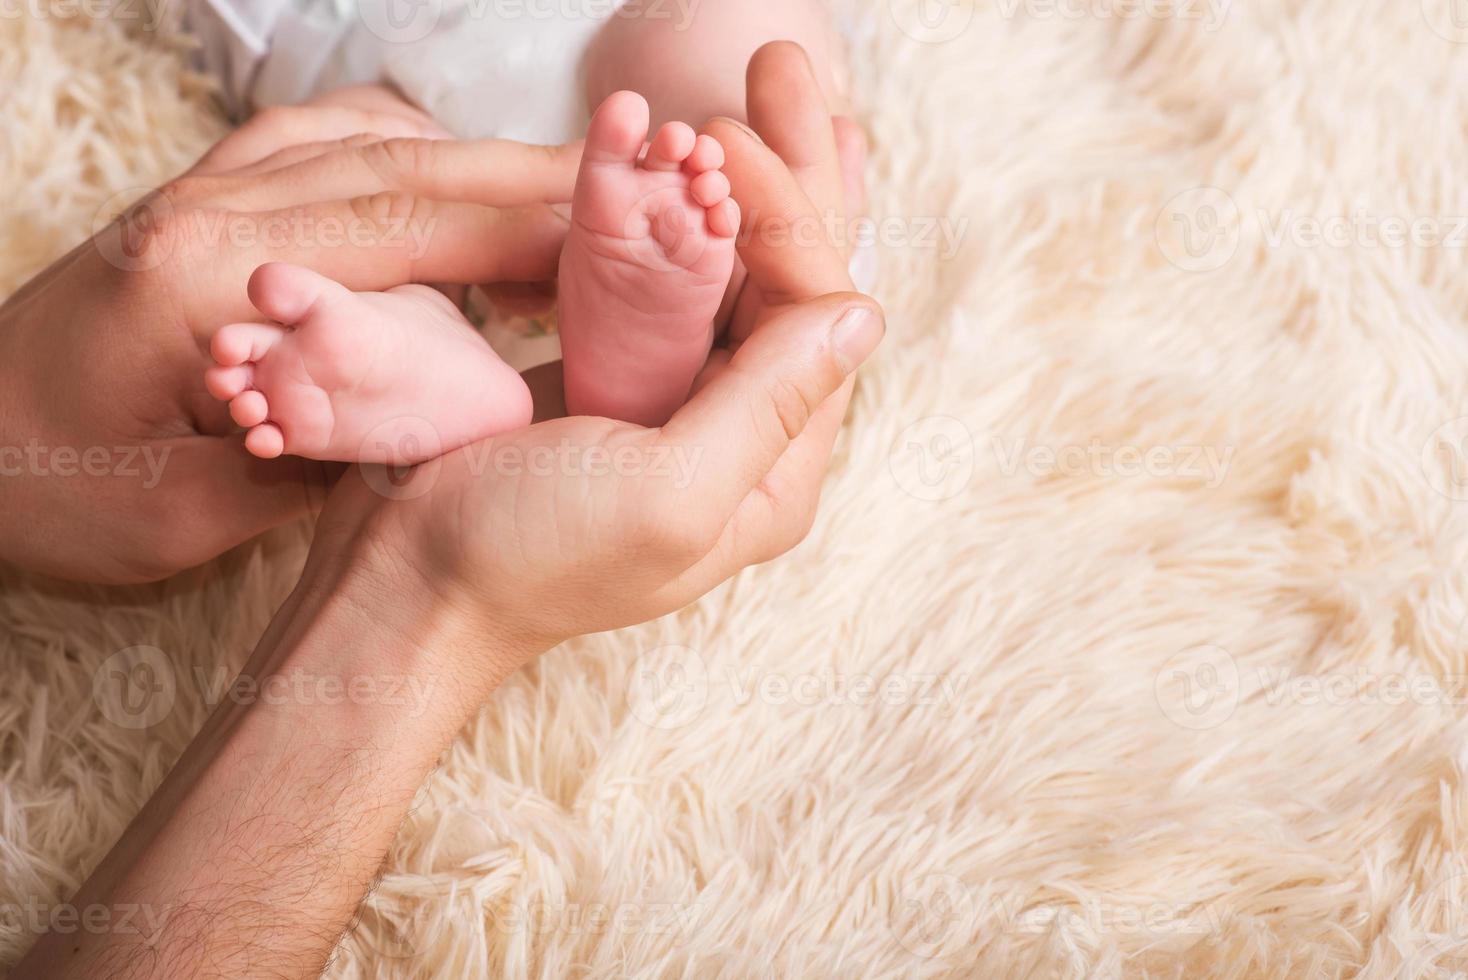 mamma håller i sina händer en liten babyfot. små ben av ett nyfött barn i händerna på mamma. baby fotmassage foto